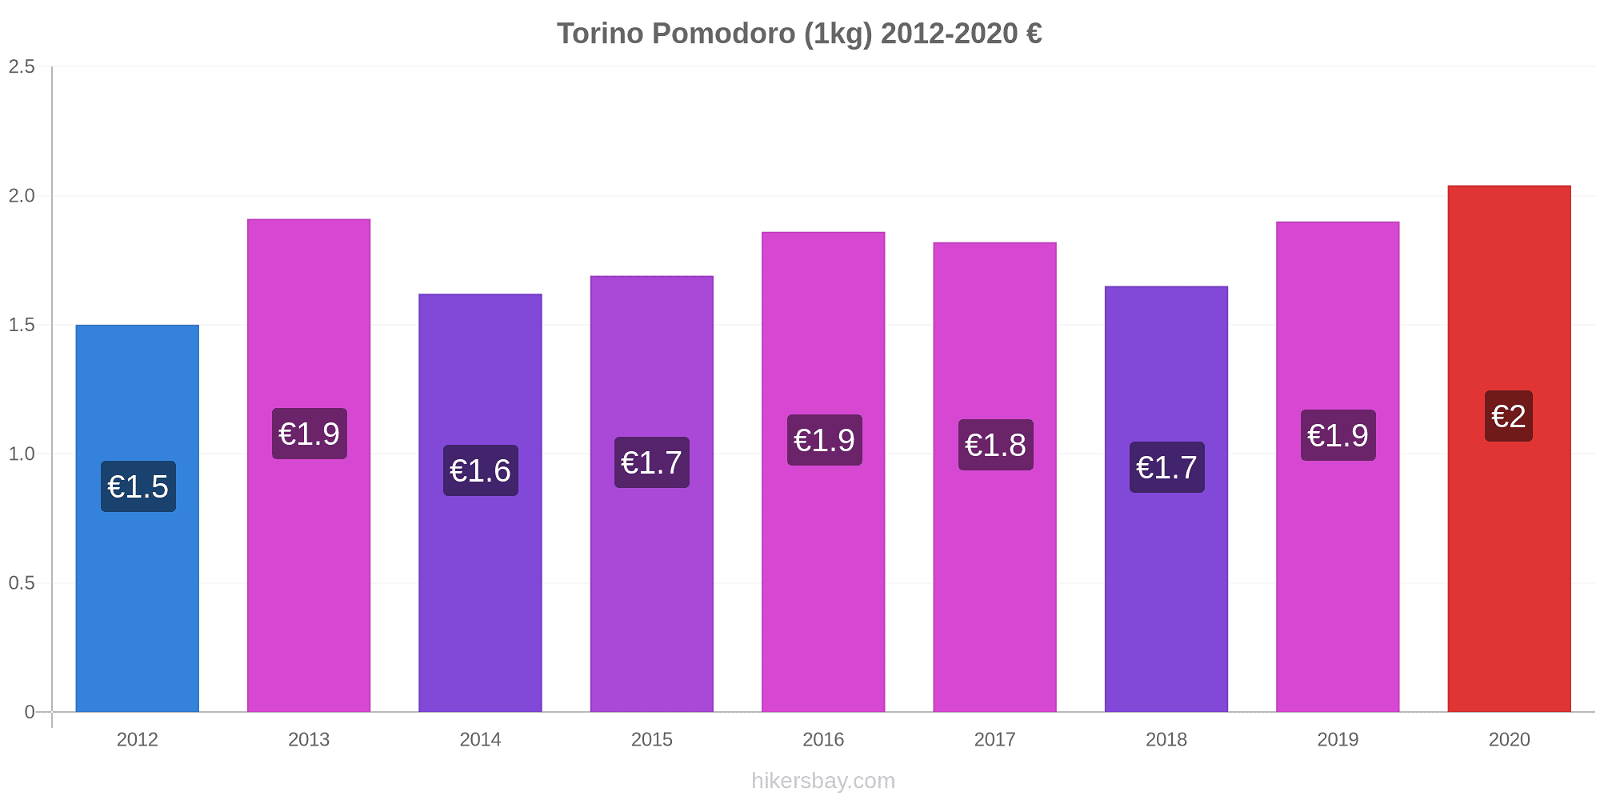 Torino variazioni di prezzo Pomodoro (1kg) hikersbay.com